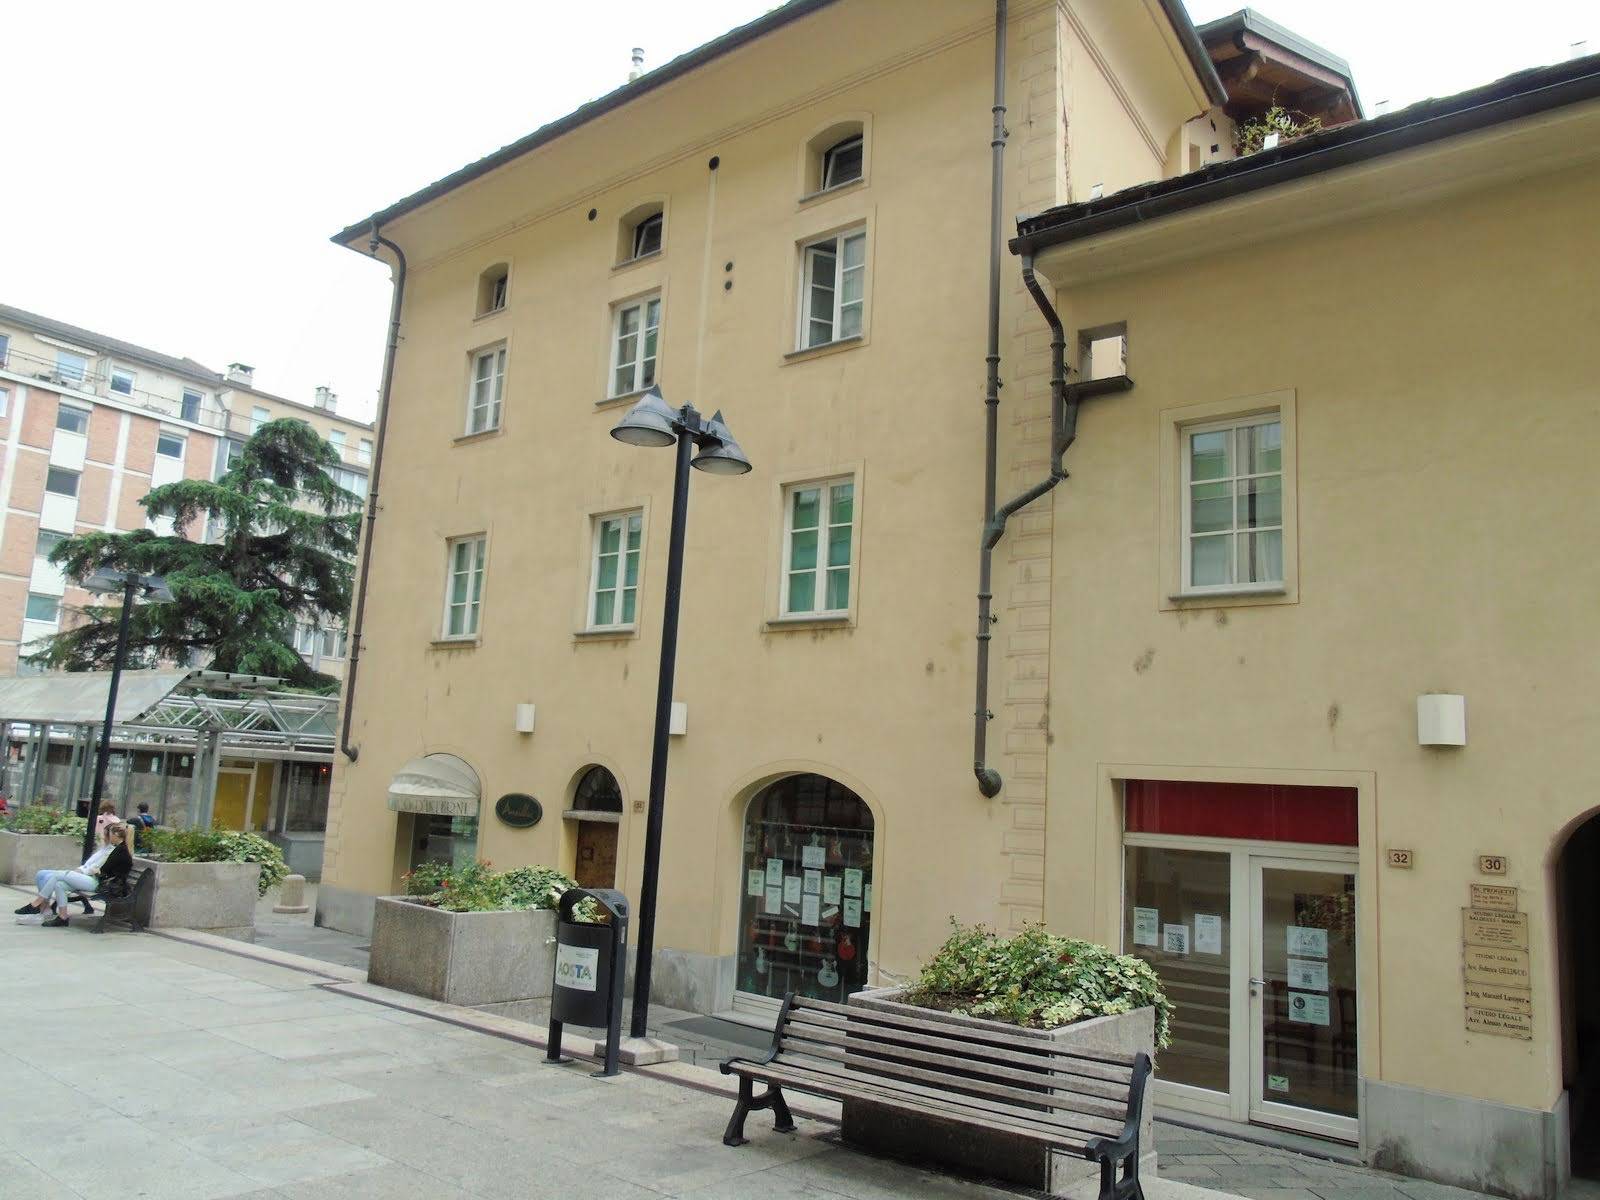 Ufficio / Studio in vendita a Aosta, 2 locali, zona Zona: Centro, prezzo € 270.000 | CambioCasa.it